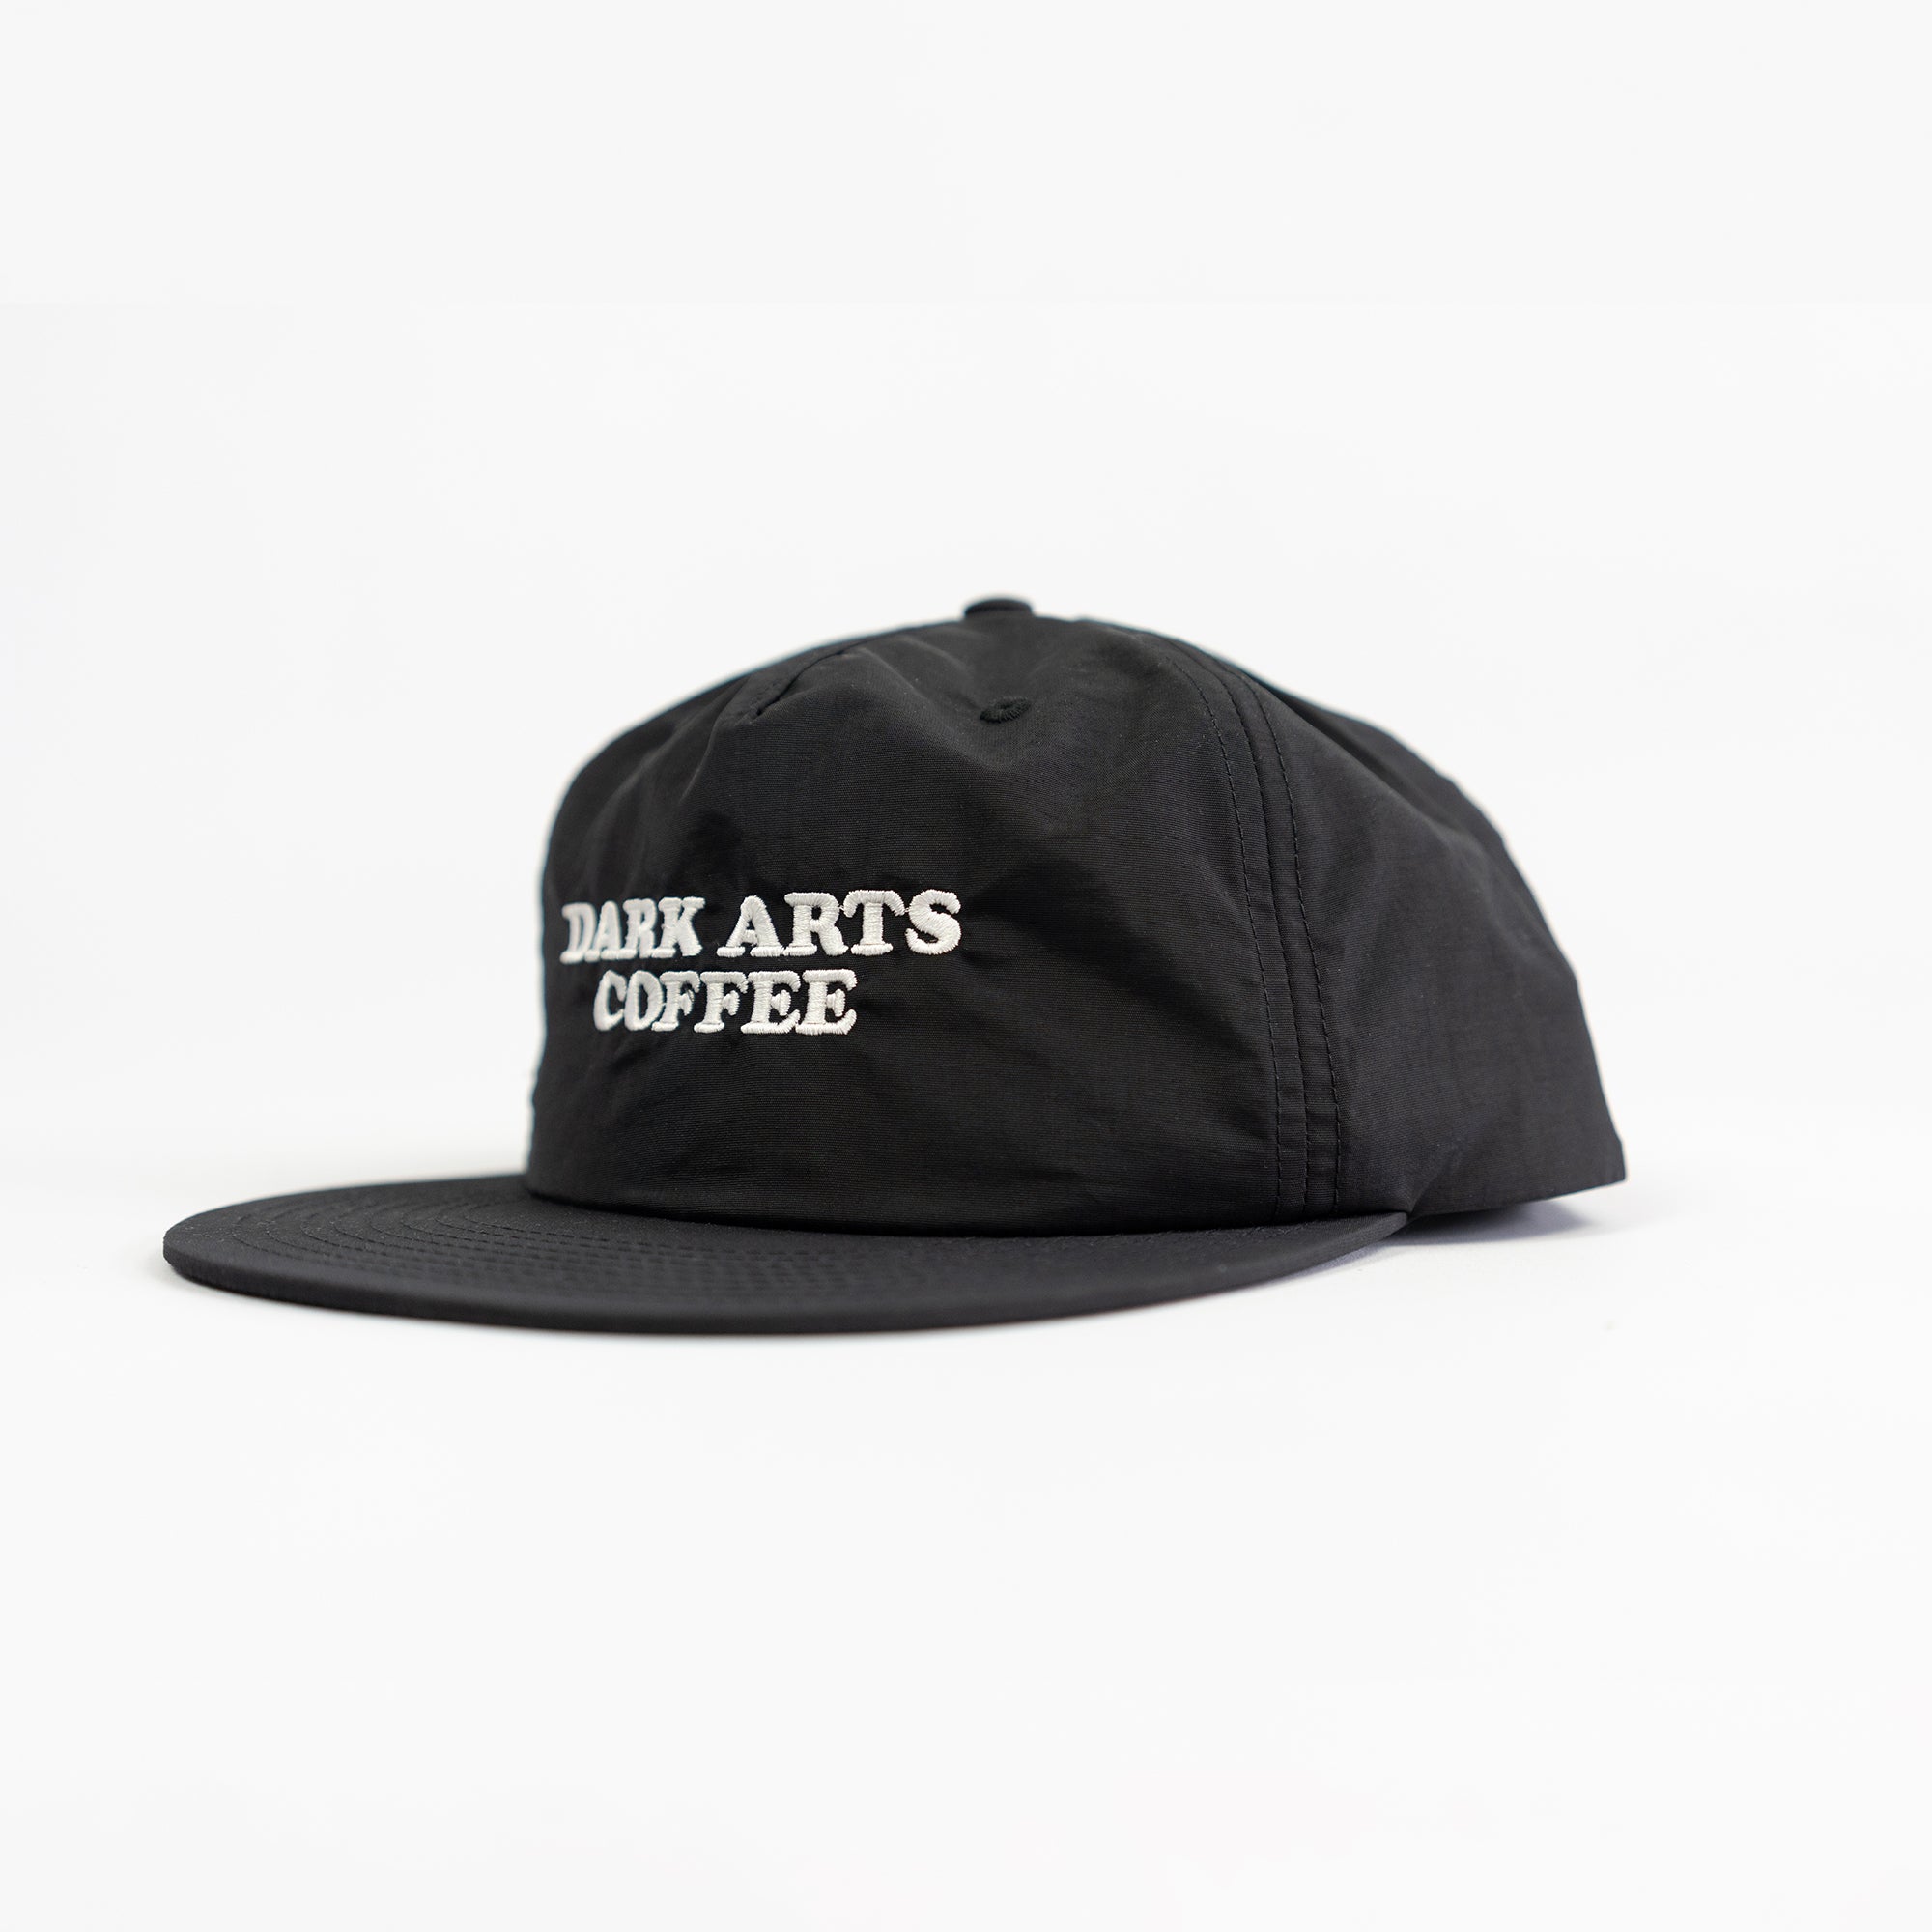 DARK ARTS 5 PANEL CAP - BLACK